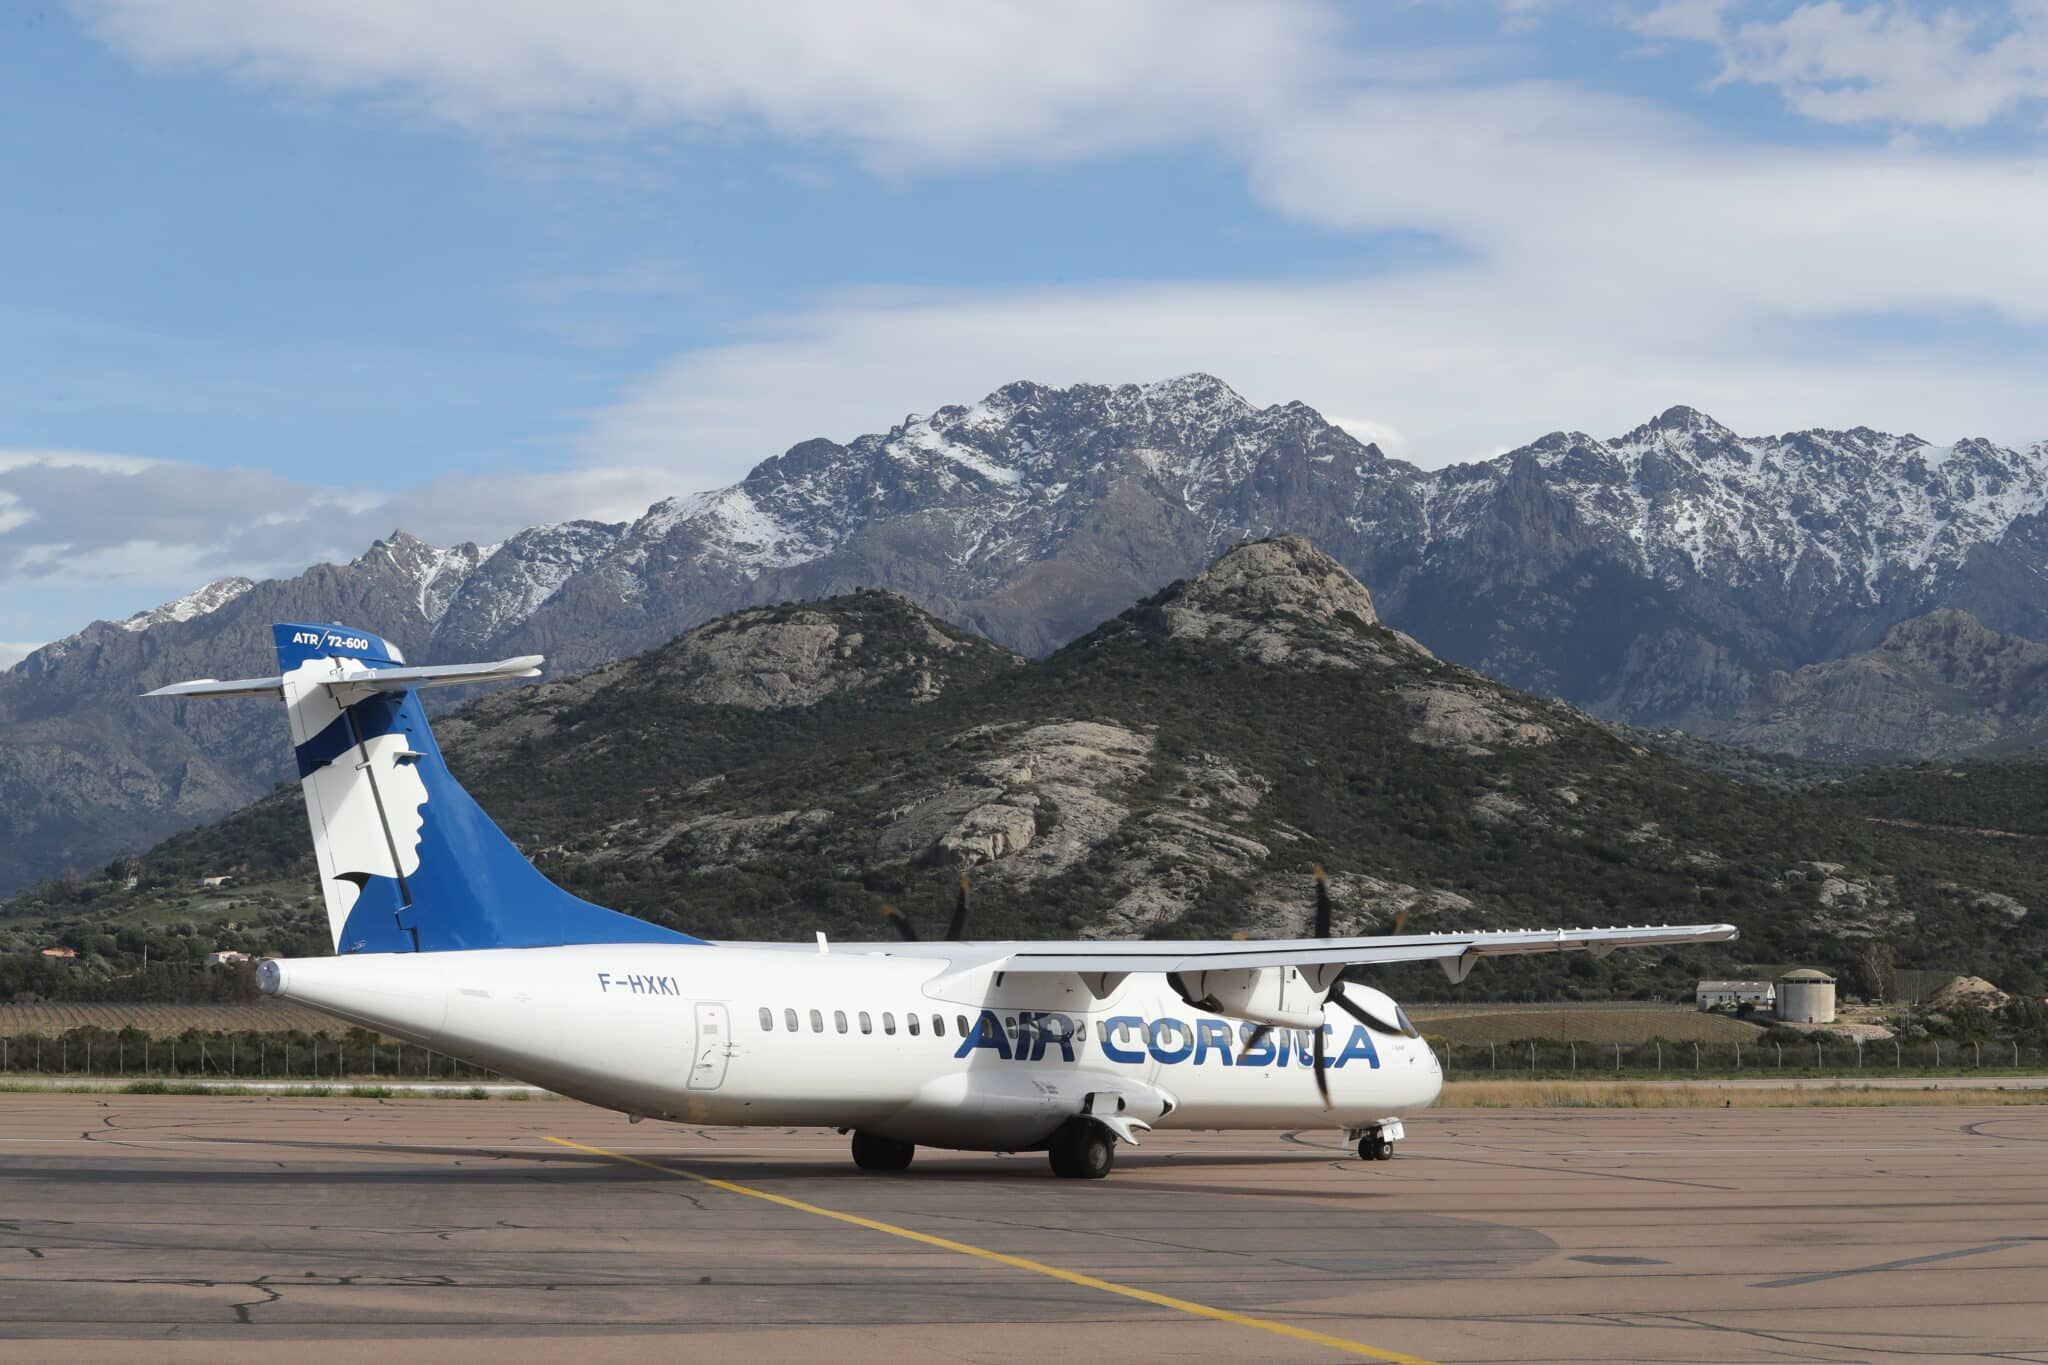 An Air Corsica ATR aircraft against a mountainous landscape 